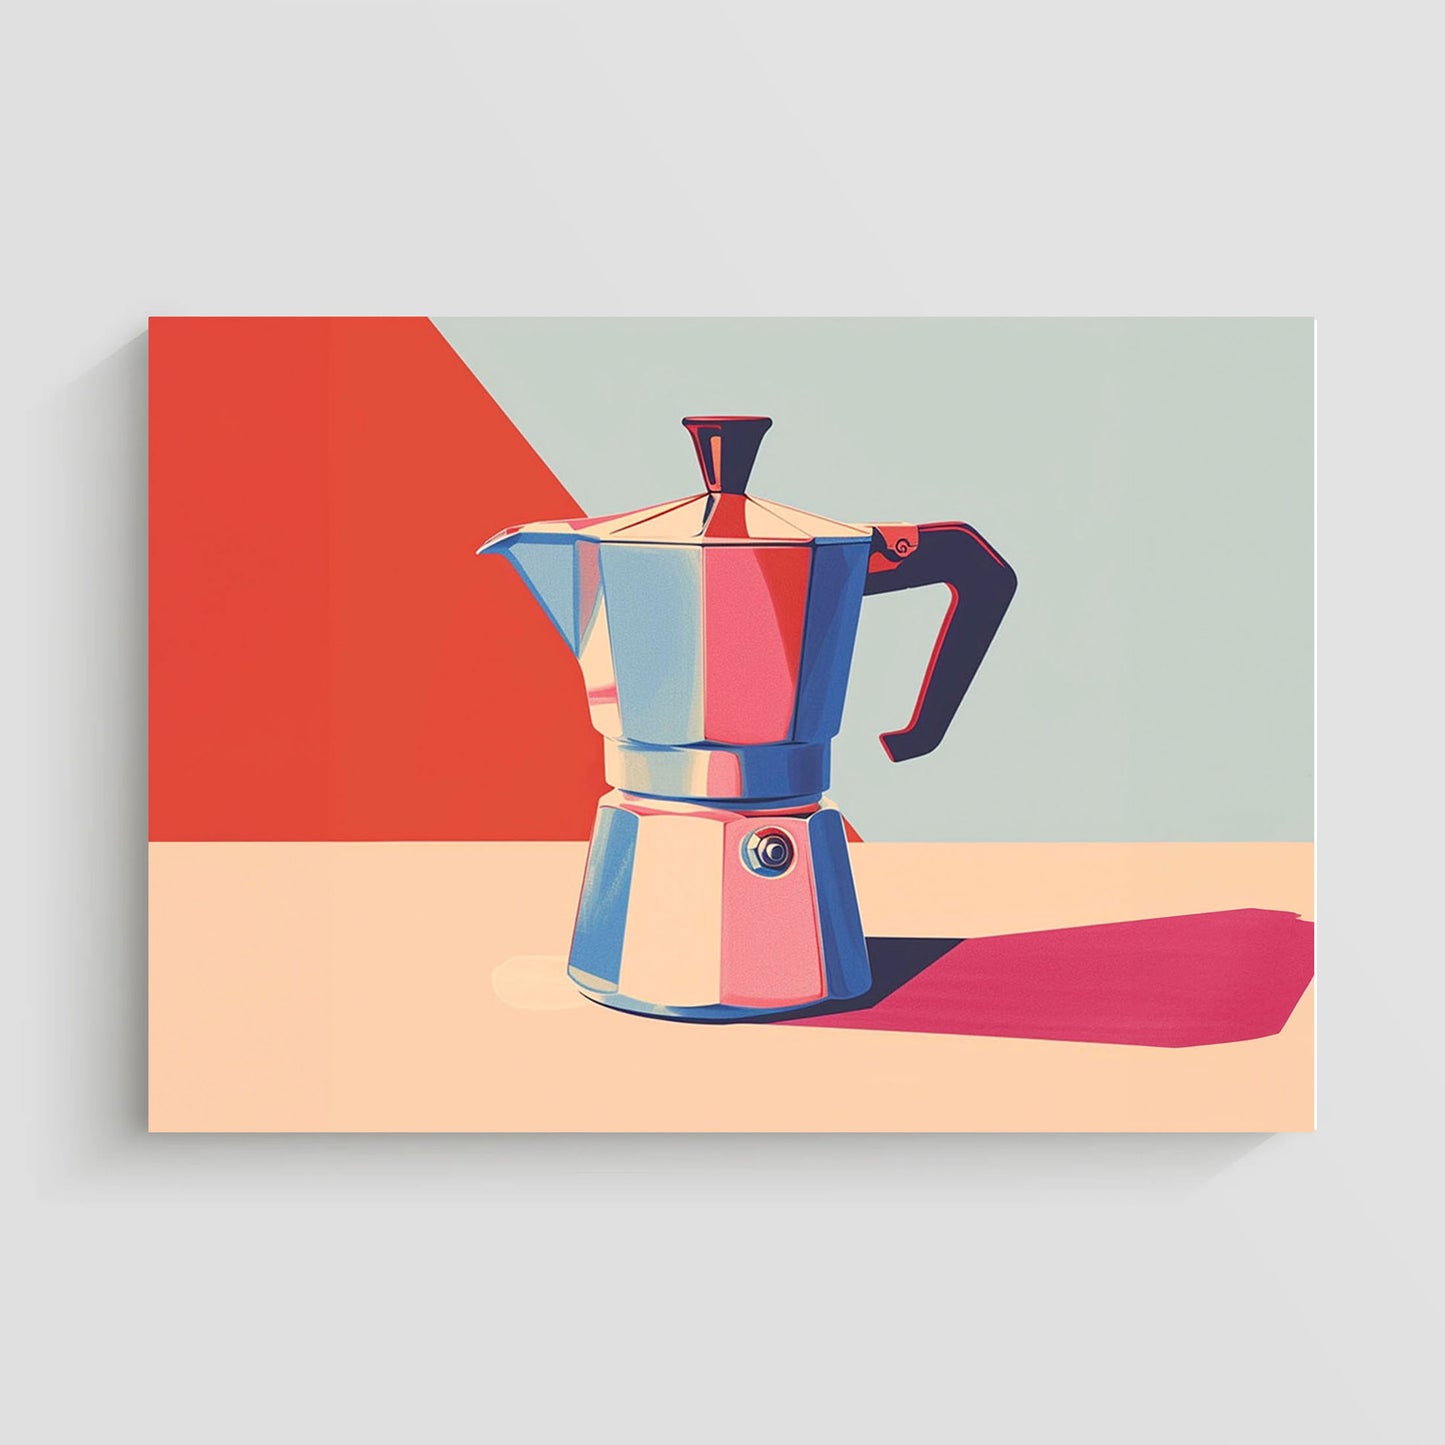 Ilustración vibrante de una cafetera italiana Moka en tonos brillantes de rojo, azul y beige